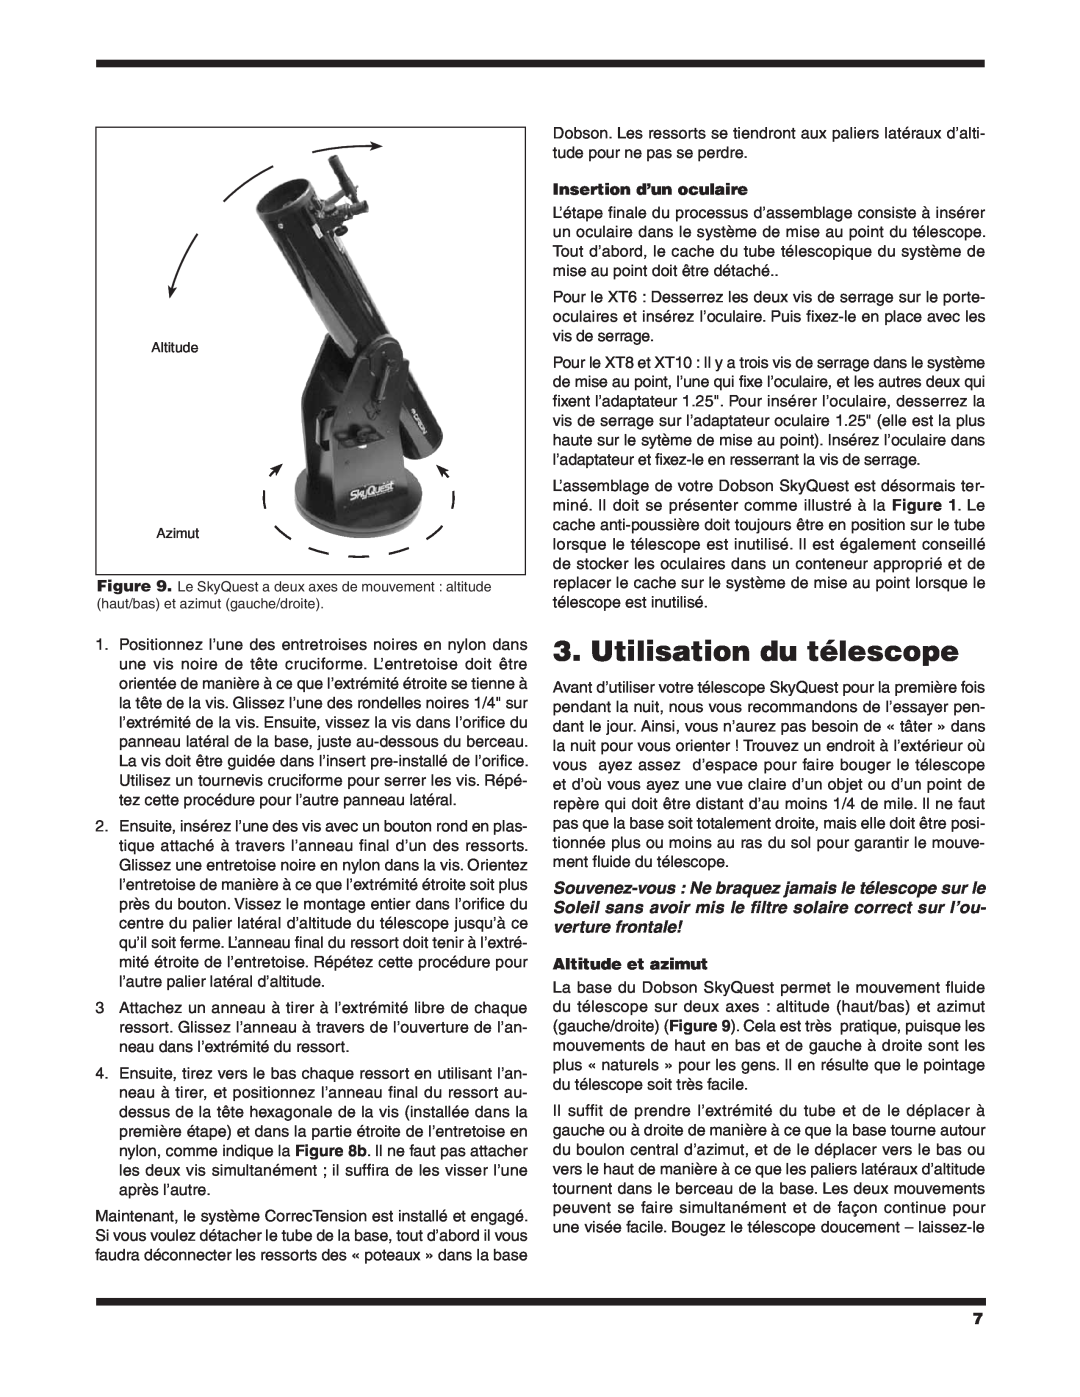 Orion XT6 CLASSIC manual Utilisation du télescope, Insertion d’un oculaire, Altitude et azimut 